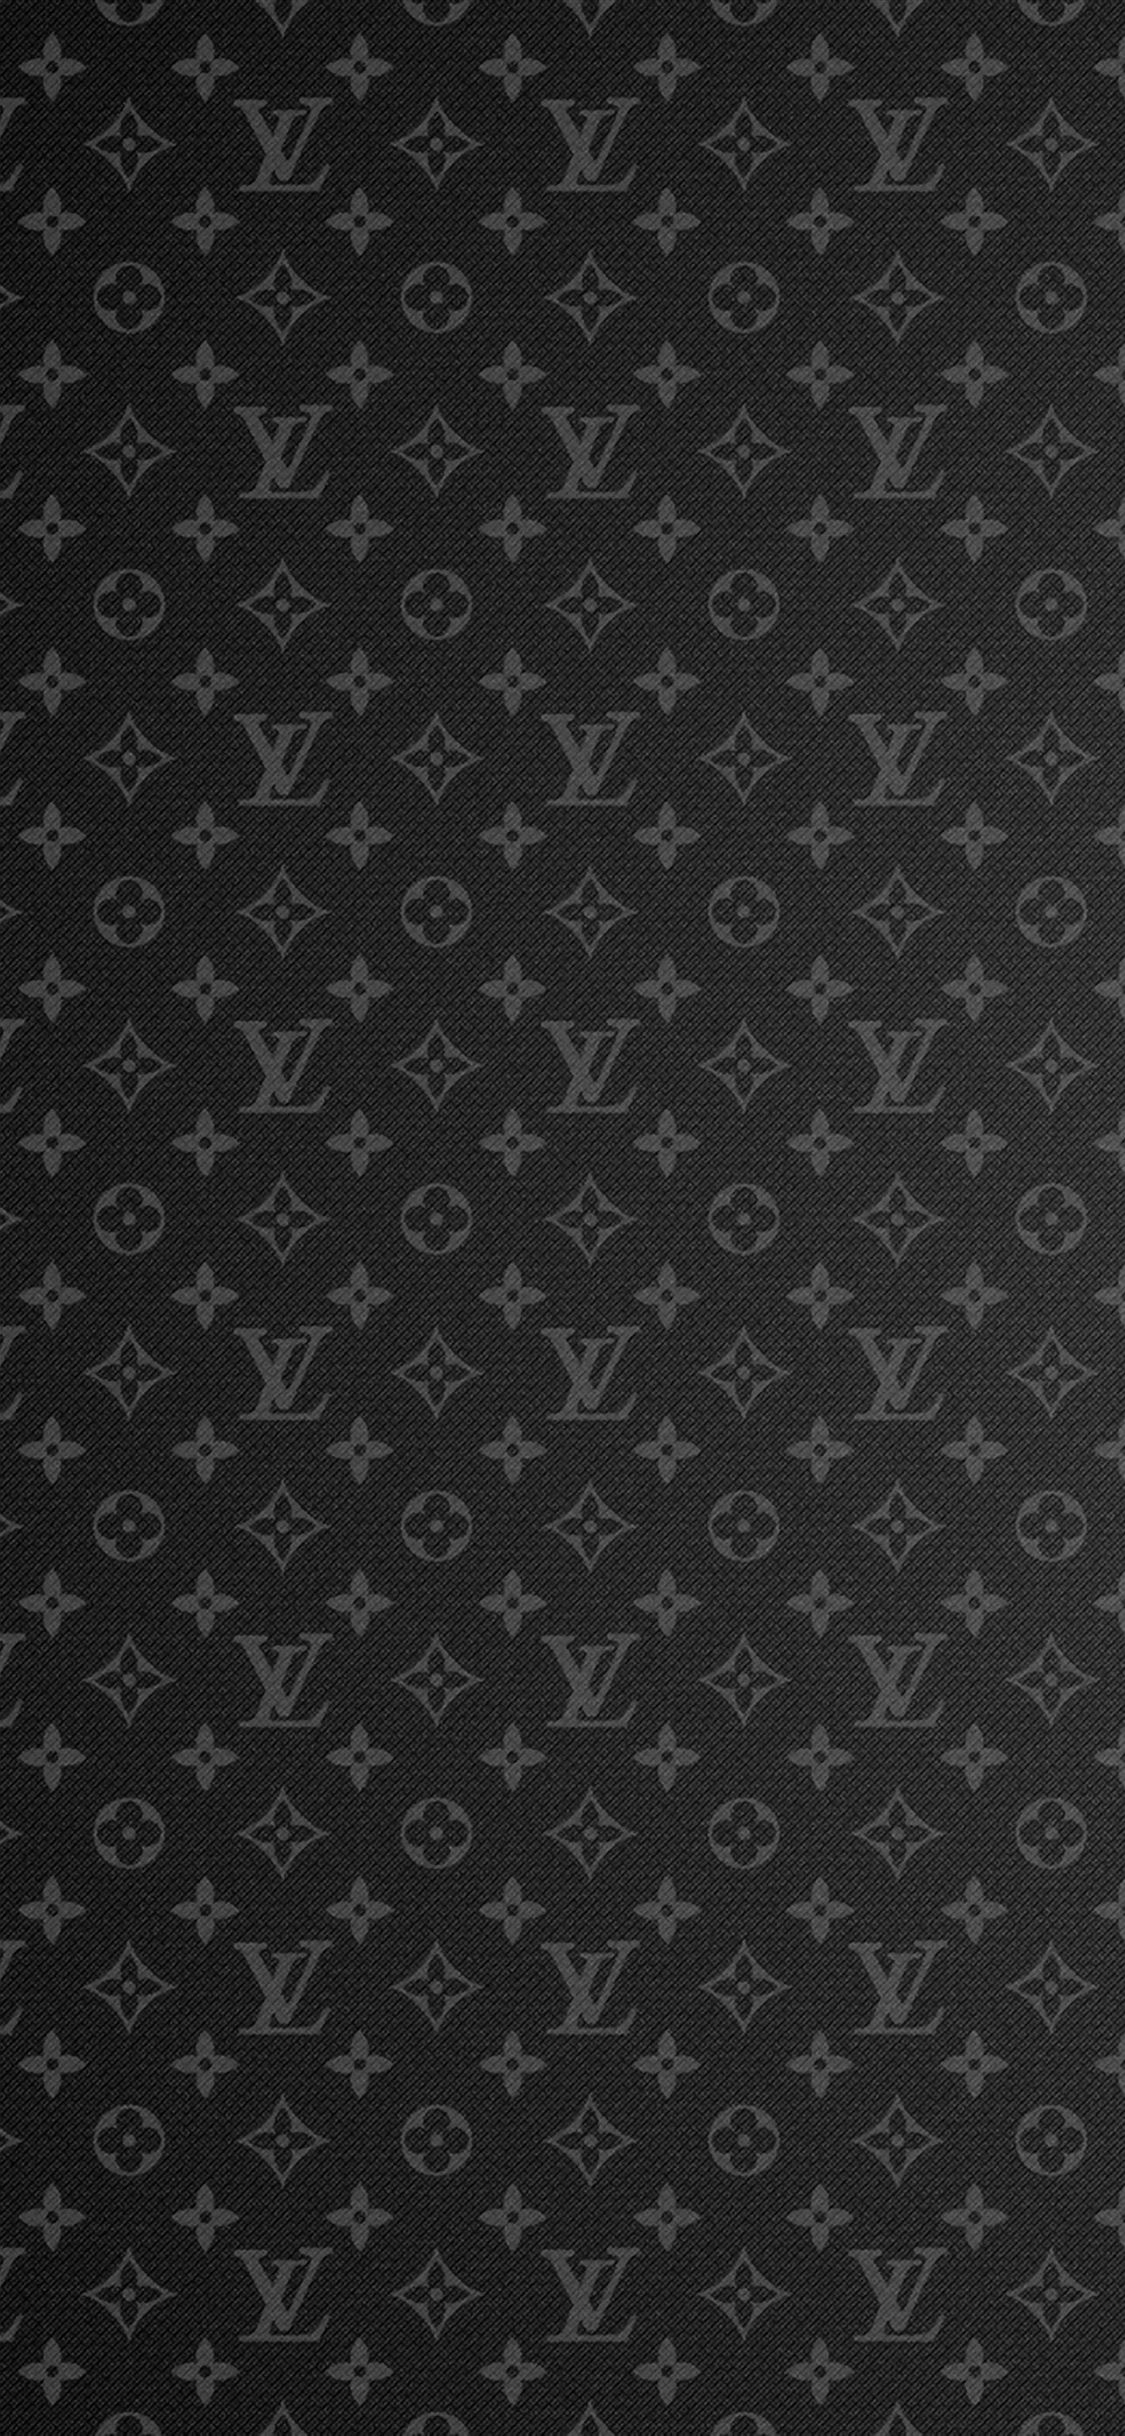 Louis Vuitton iPhone wallpaper 